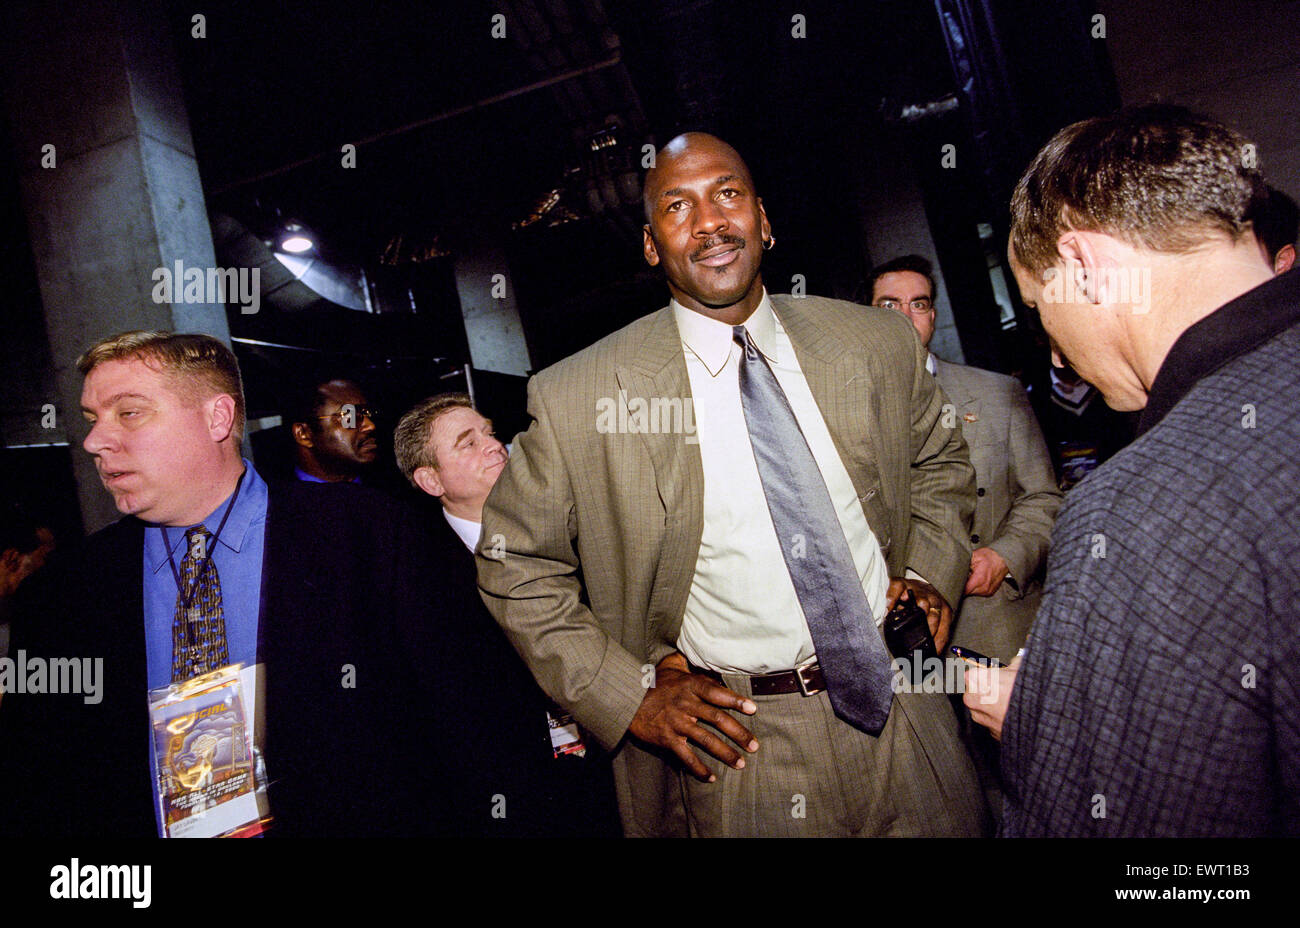 Oakland, CA - 13 février : Michael Jordan au match des étoiles de la NBA qui s'est tenue à Oakland, Californie le 13 février 2000. Banque D'Images